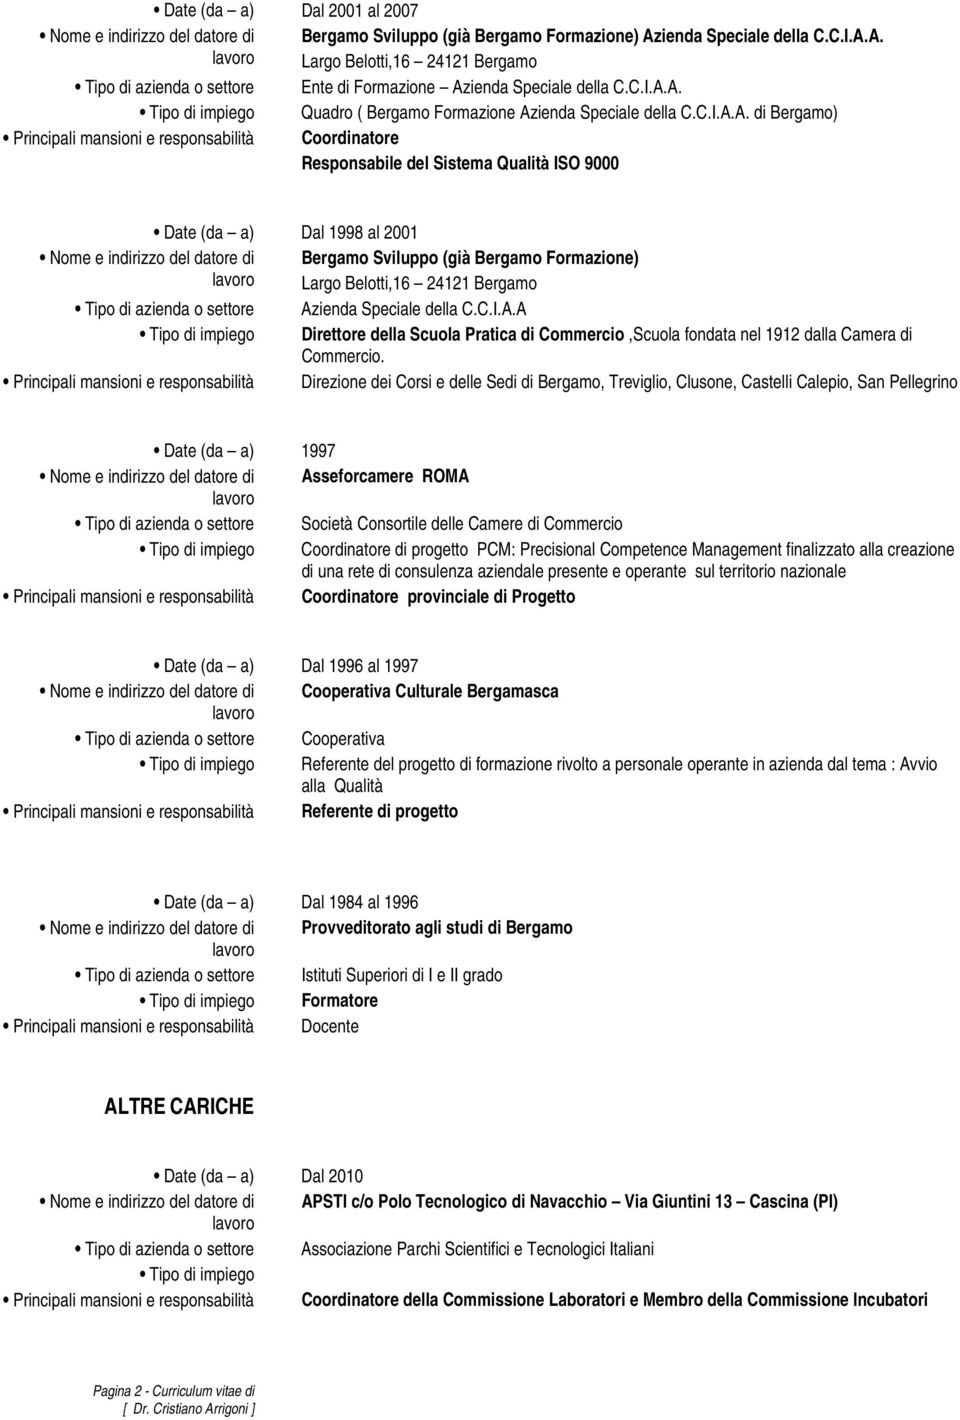 A. di Bergamo) Principali mansioni e responsabilità Coordinatore Responsabile del Sistema Qualità ISO 9000 Date (da a) Dal 1998 al 2001 Bergamo Sviluppo (già Bergamo Formazione) Tipo di azienda o